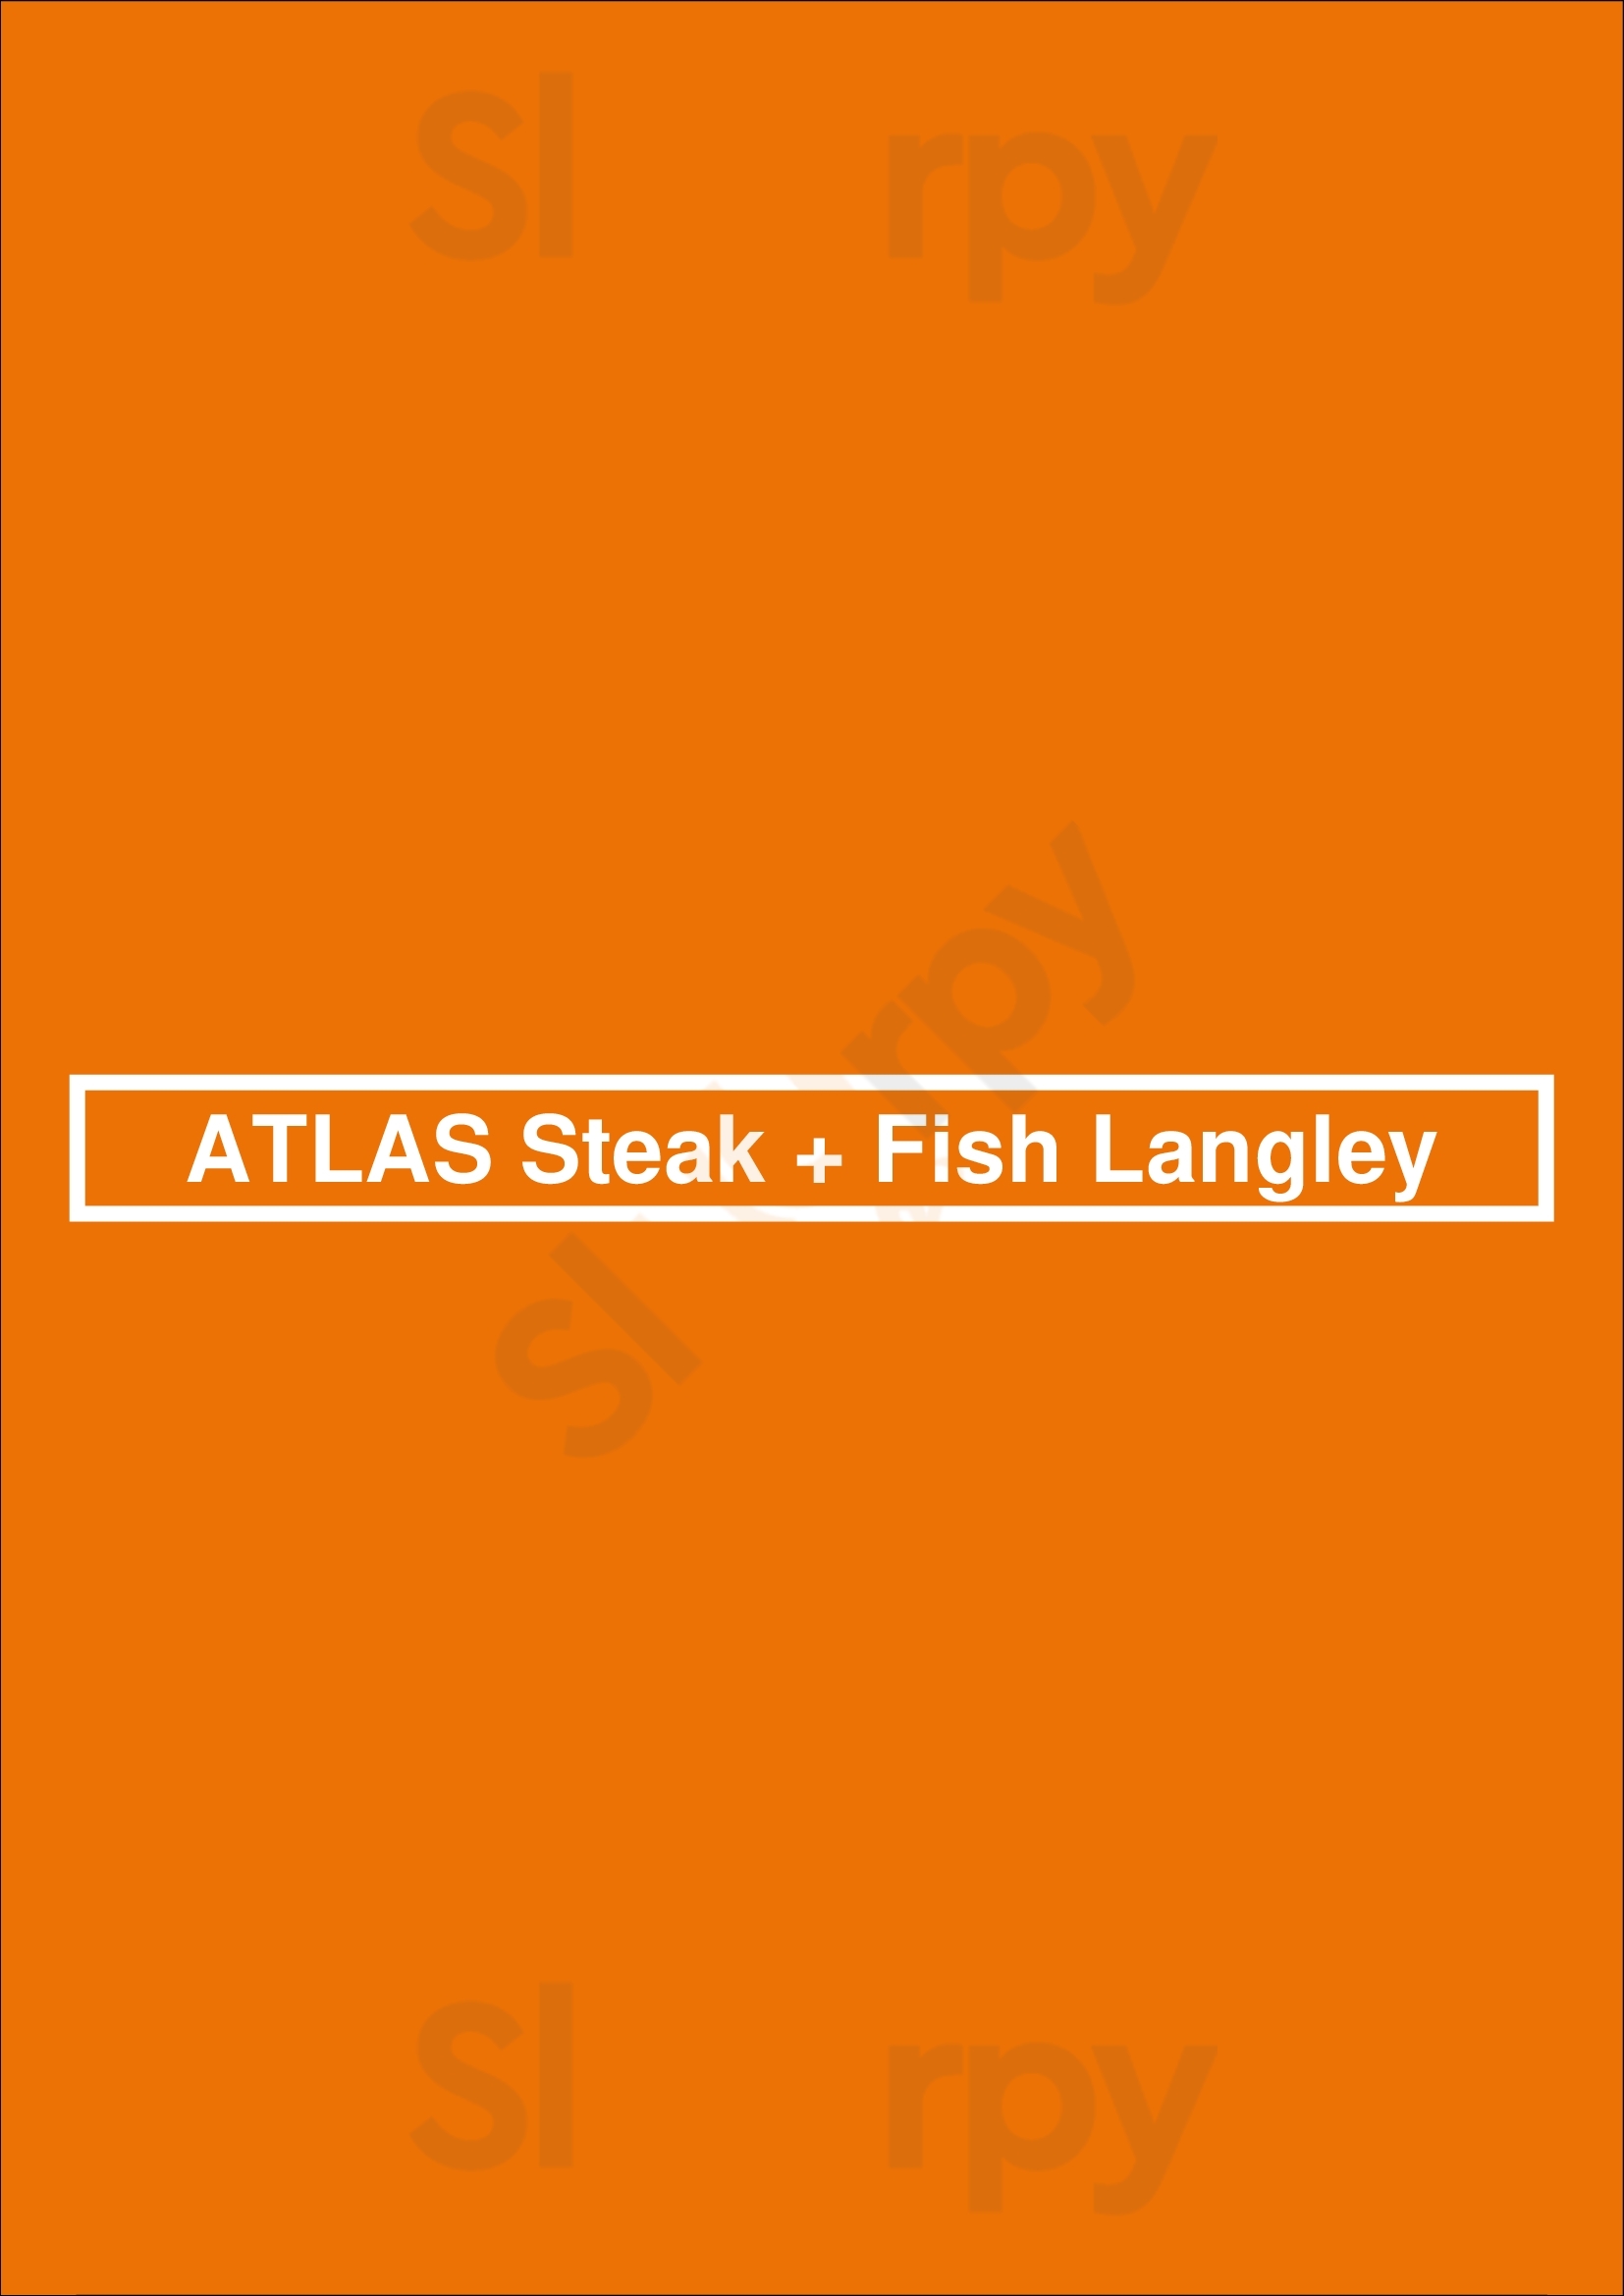 Atlas Steak + Fish Langley Menu - 1